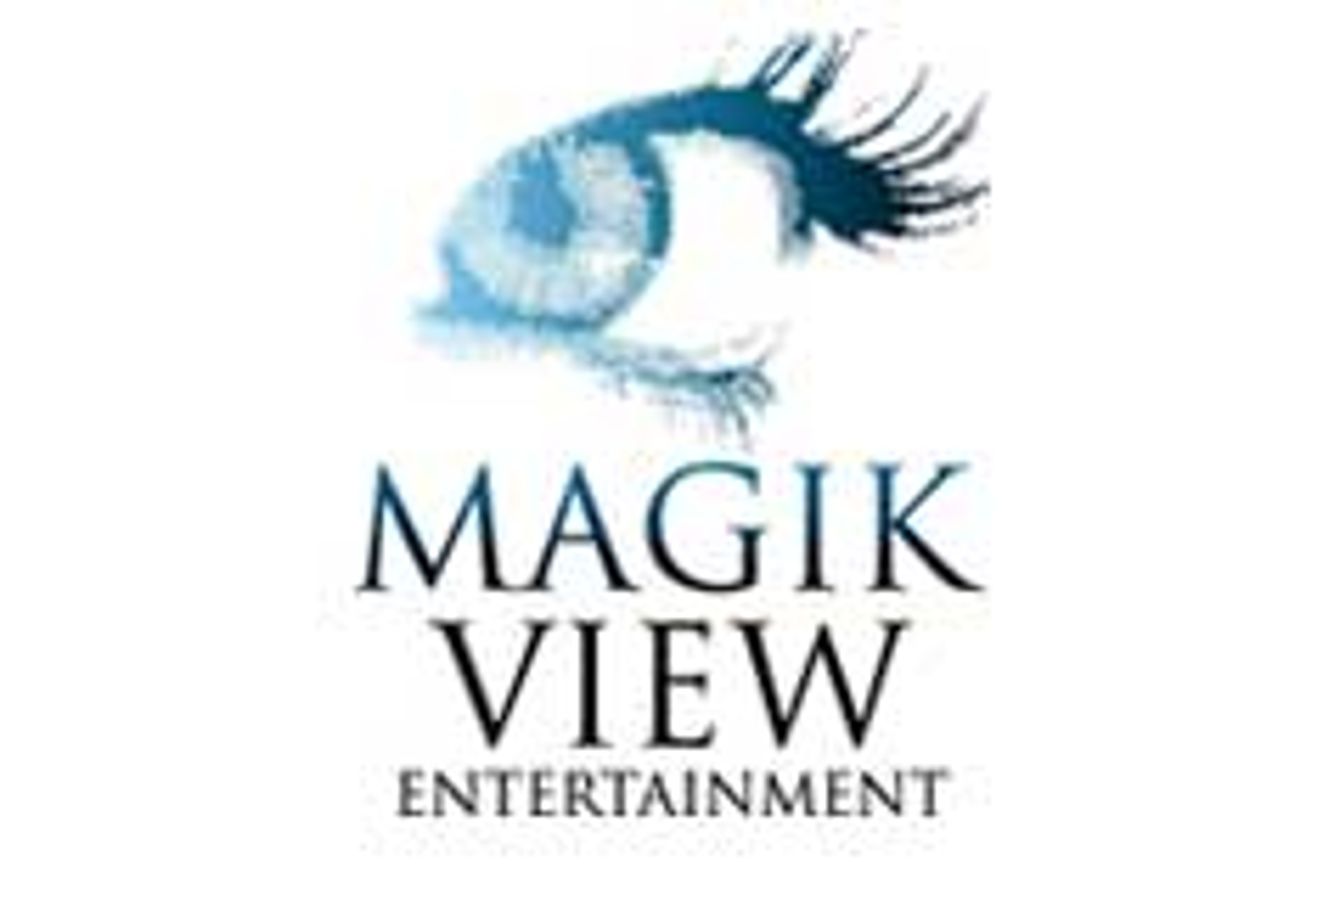 MagikView Entertainment